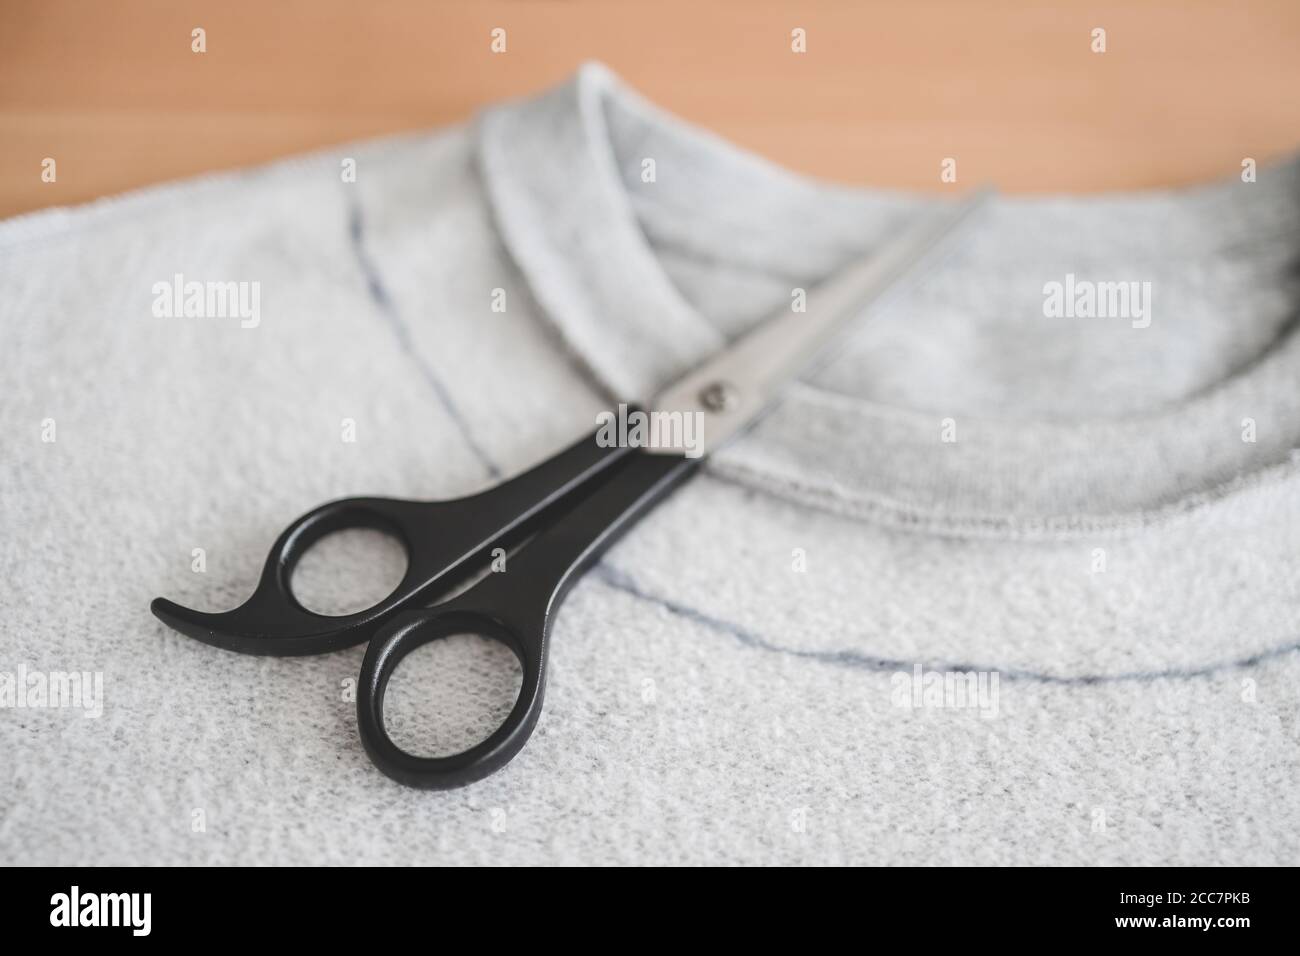 Mode diy und Upcycling alte Kleidung Konzept, Sweatshirt mit Schere, um  einen neuen Ausschnitt zu schneiden Stockfotografie - Alamy